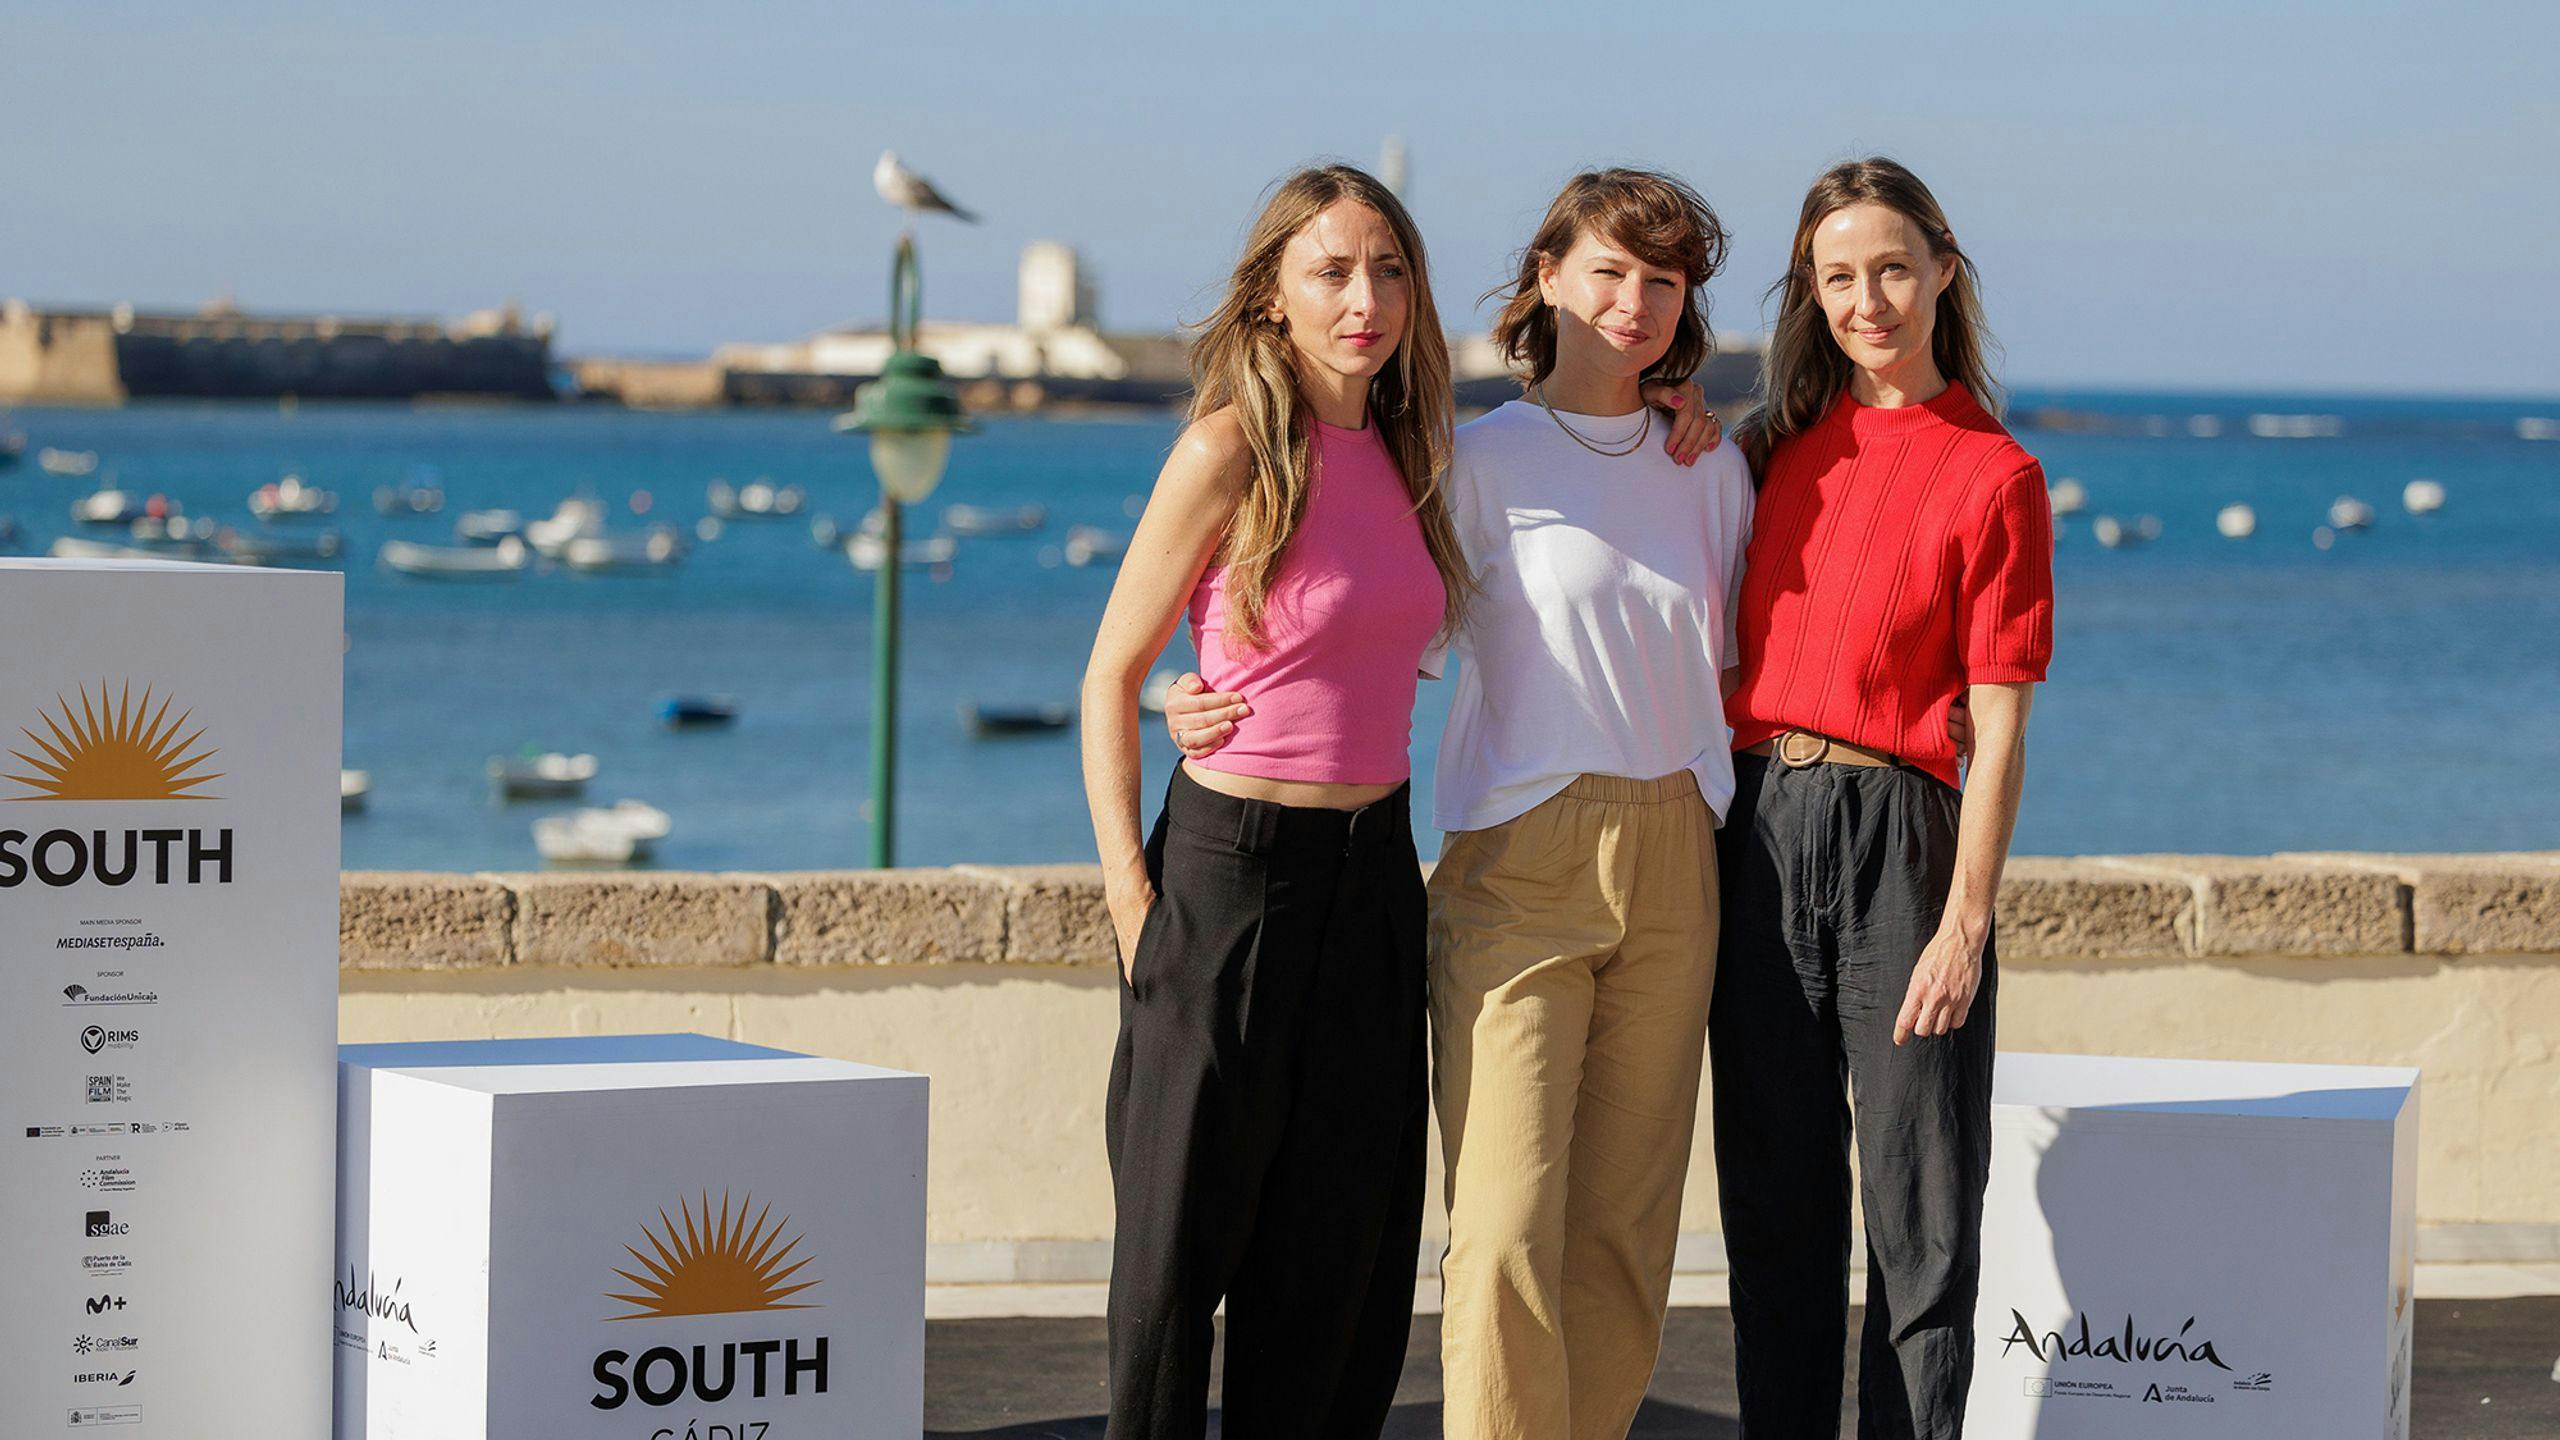  Kristin Grue (guionista), Kathrine Thorborg (su protagonista) y Camilla Brusdal (productora), parte del equipo de 'Power play', posan en el South International Series Festival